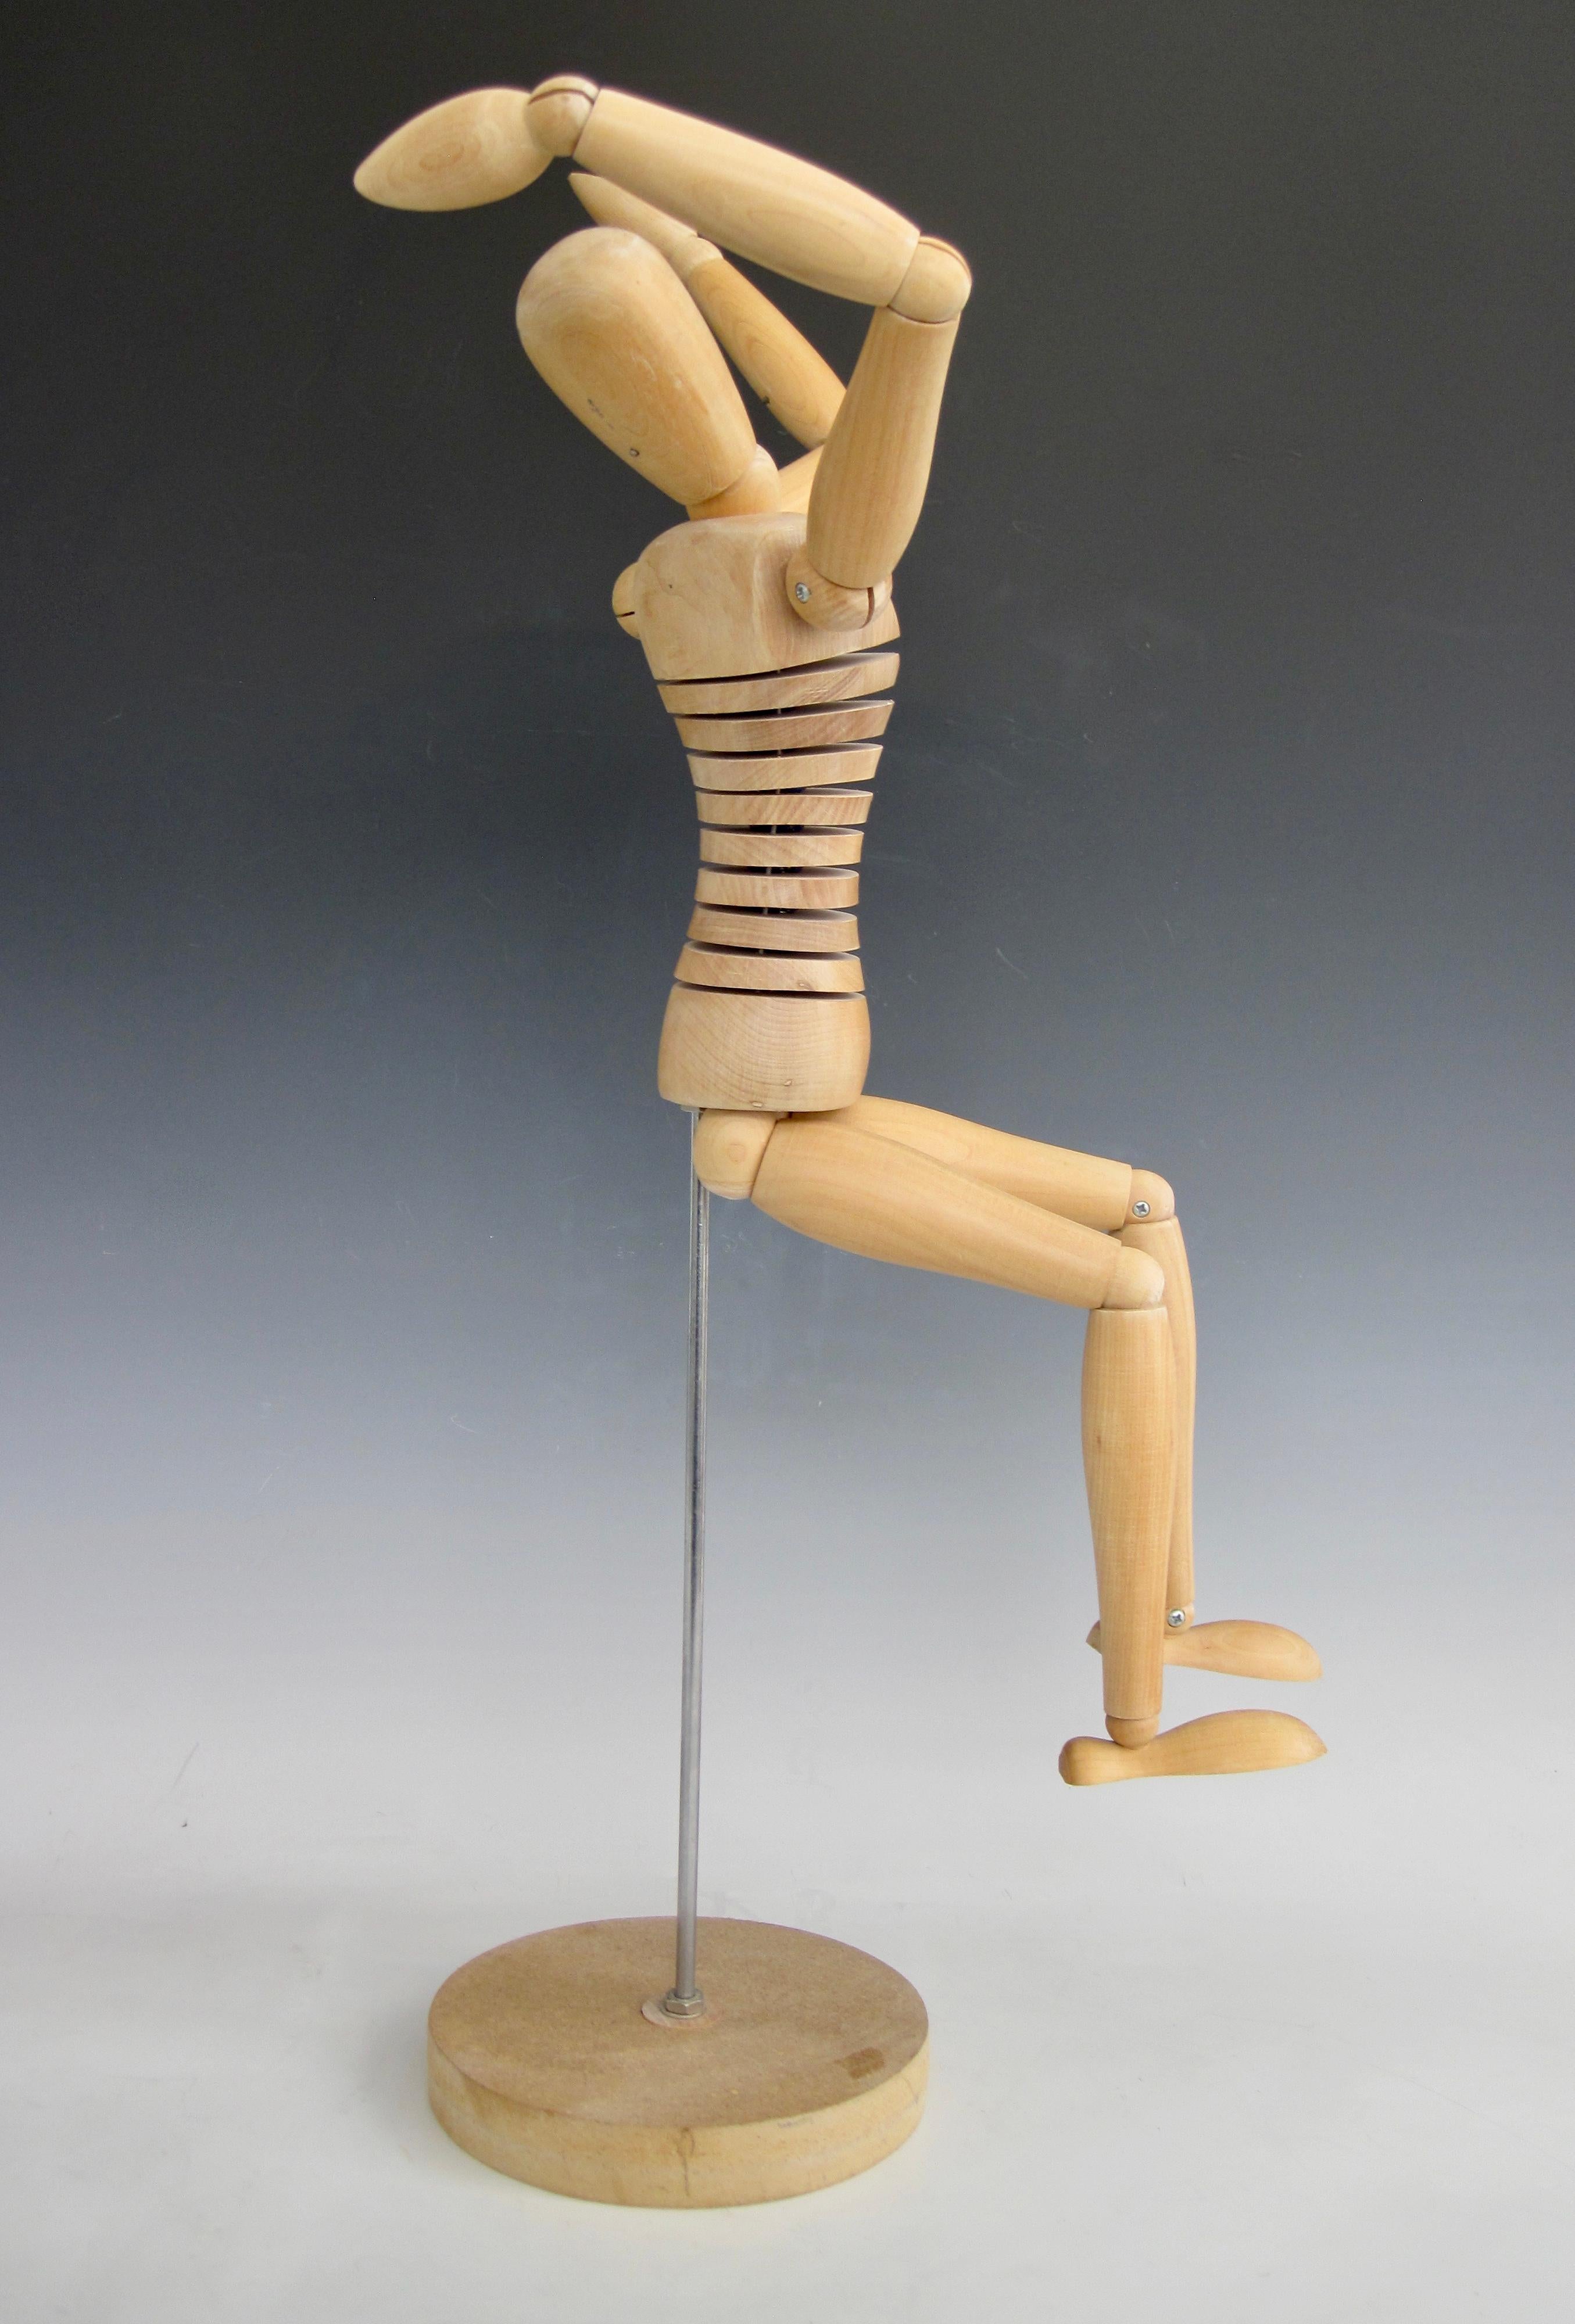 A statuesque wooden human figure artist mannequin standing at 25.5